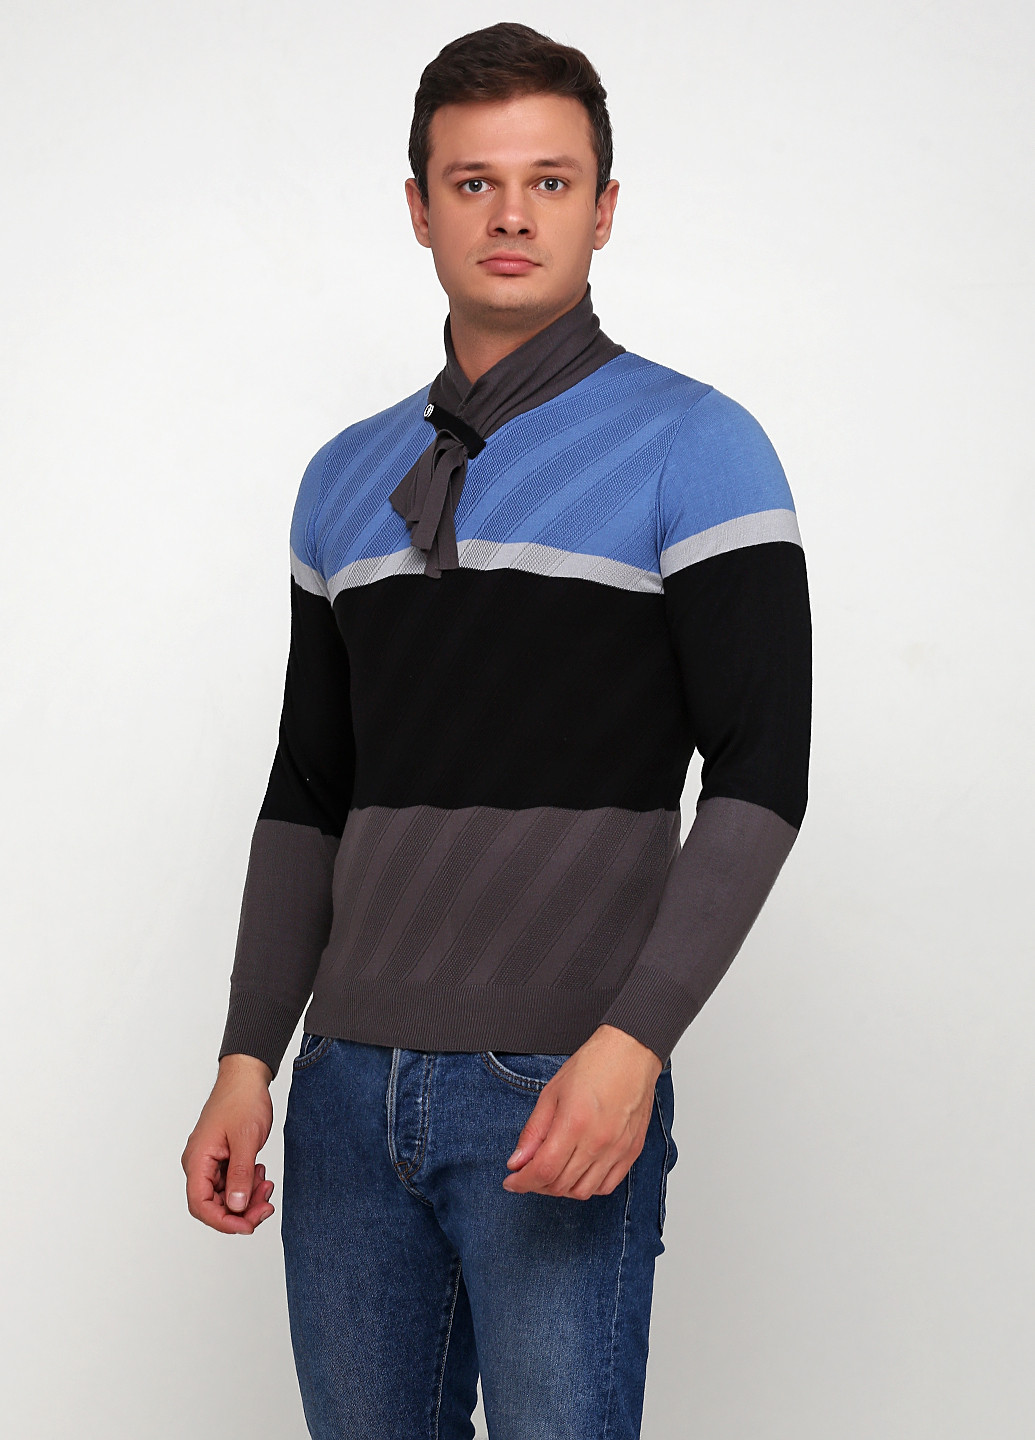 Комбинированный демисезонный пуловер пуловер Vip Stonts